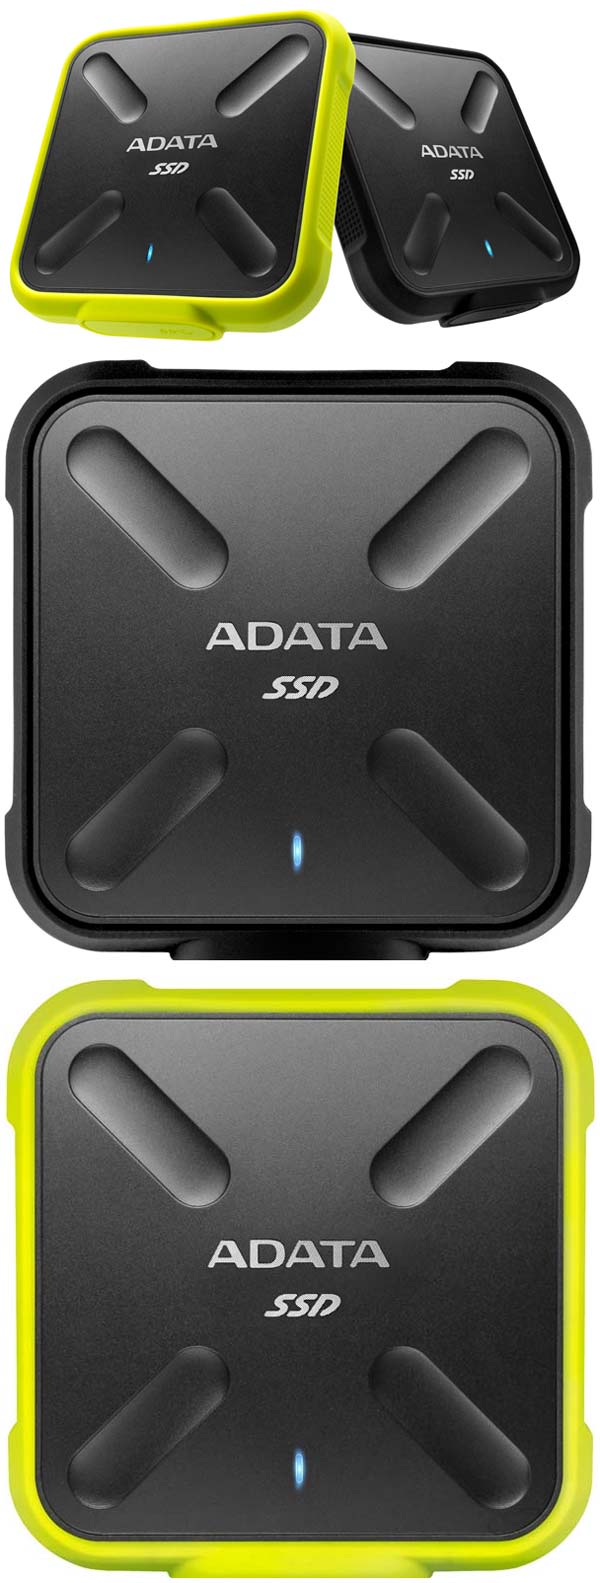 ADATA SD700